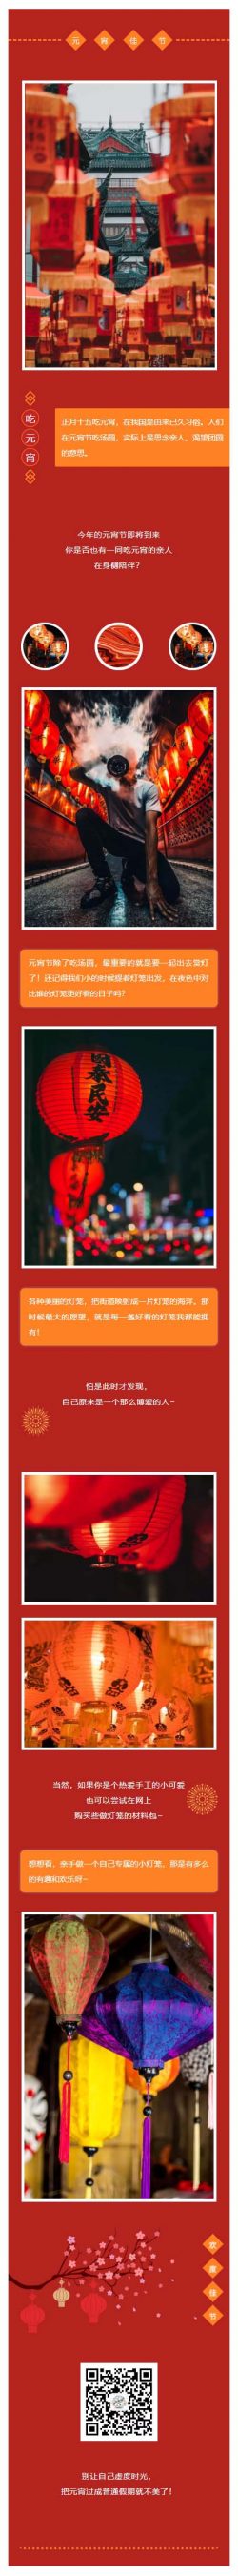 元宵佳节正月十五吃元宵微信推送文章素材推文模板